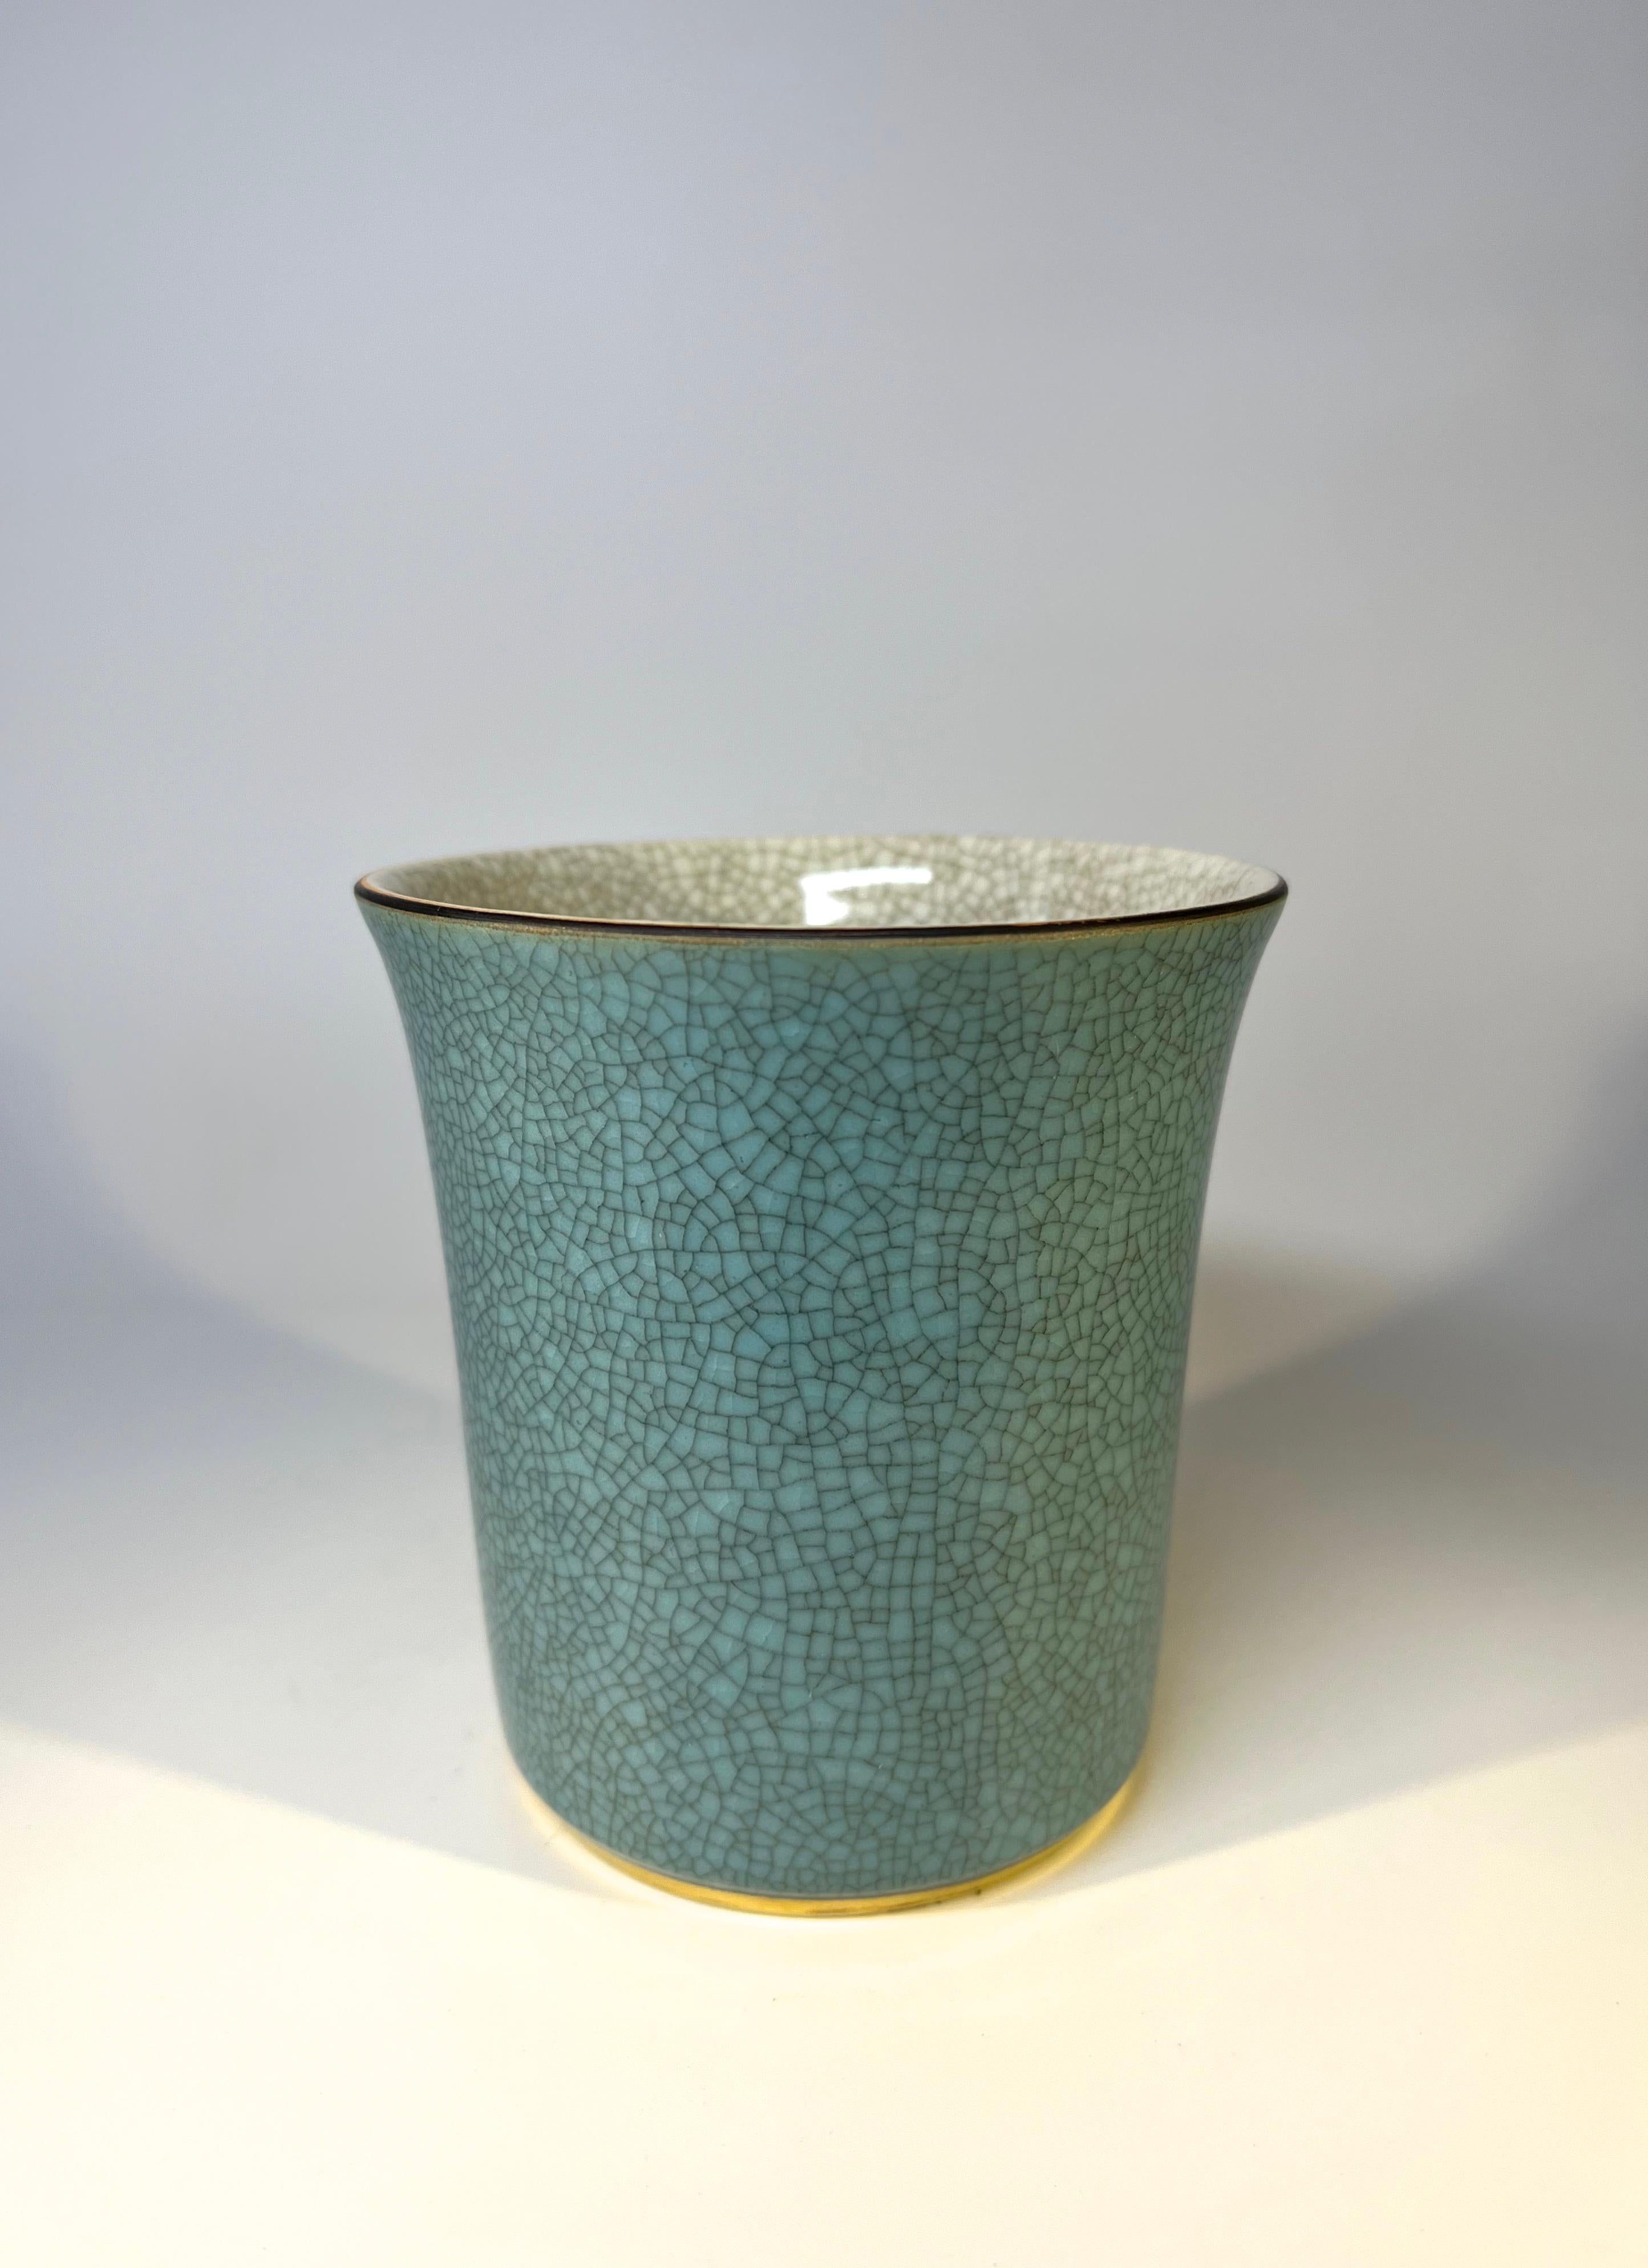 Glazed Royal Copenhagen Turquoise Crackle Glaze Tumbler Pot With Gilded Band Decoration